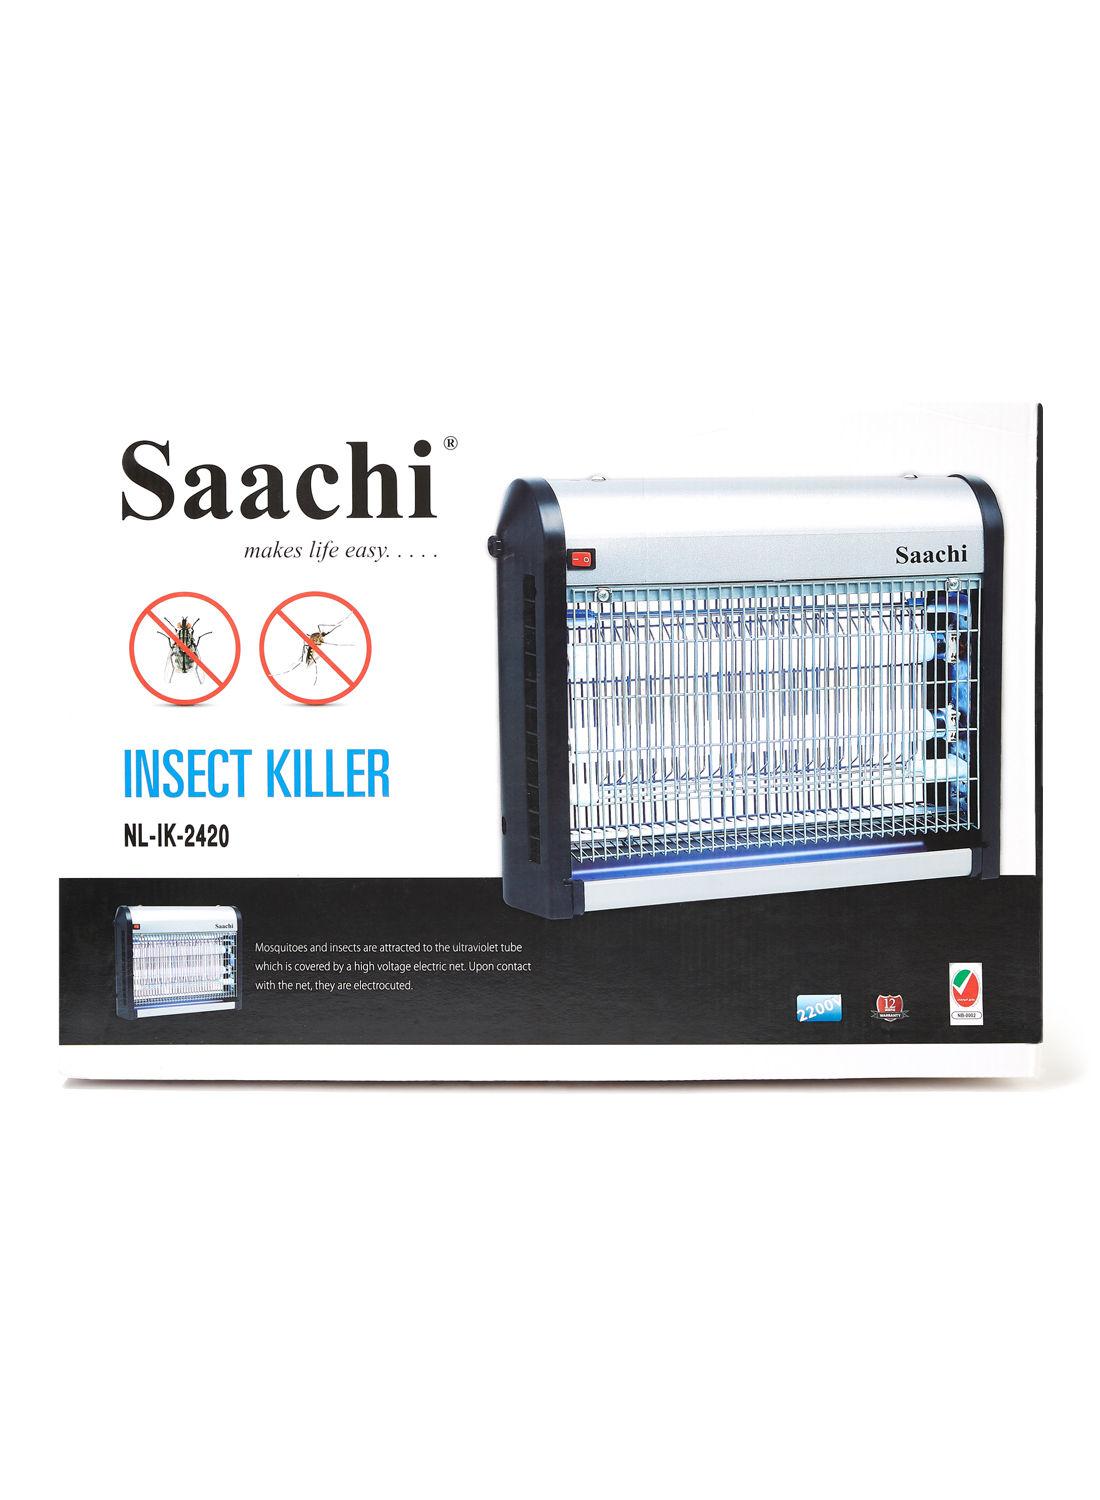 صاعق الحشرات الكهربائي Saachi Insect Killer Medium 28W - cG9zdDoyNzA5NDY=